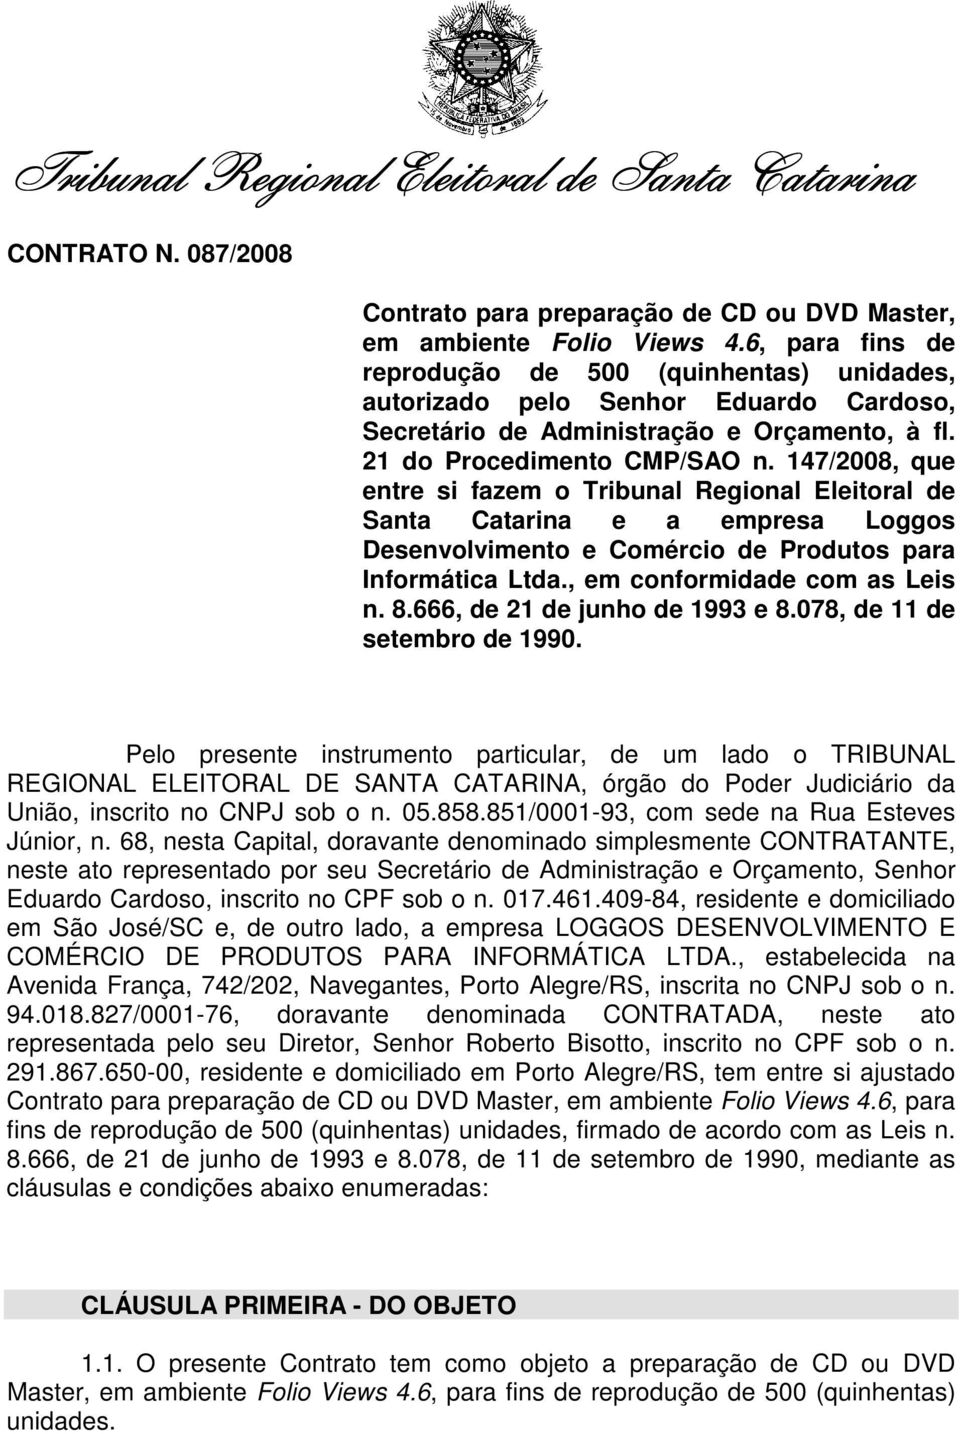 147/2008, que entre si fazem o Tribunal Regional Eleitoral de Santa Catarina e a empresa Loggos Desenvolvimento e Comércio de Produtos para Informática Ltda., em conformidade com as Leis n. 8.